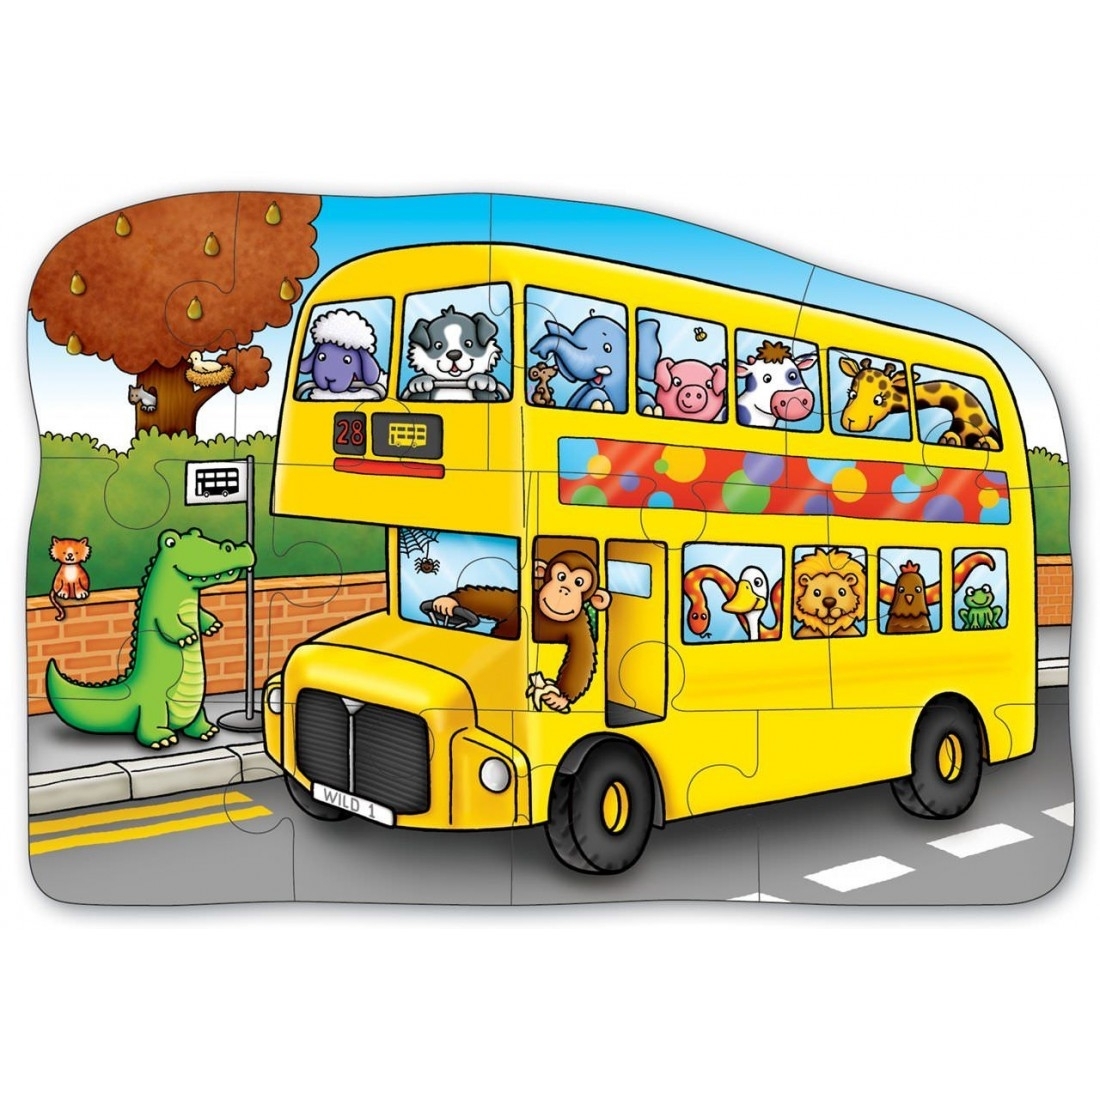 Включи автобус дети. Автобус для детей. Автобус рисунок. Автобус картинка для детей. Веселый автобус.